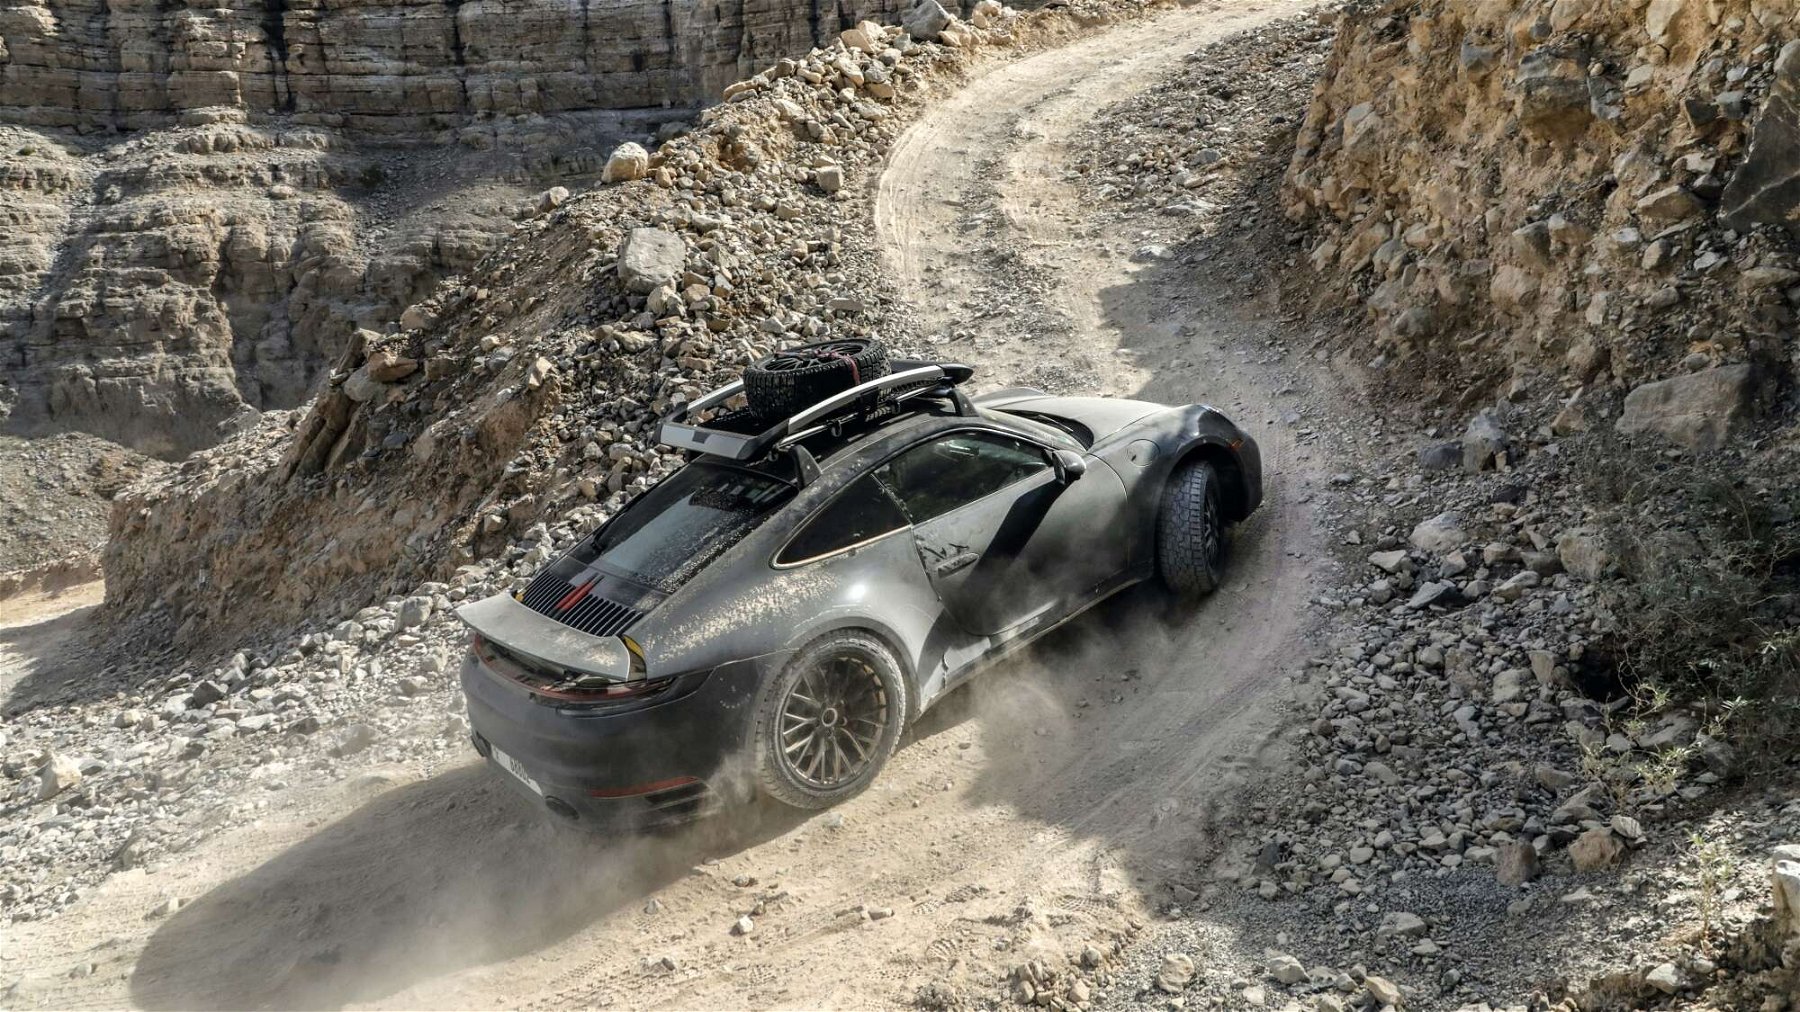 Porsche 911 Dakar: Offroad-Renner mit hauseigenem Klappspaten